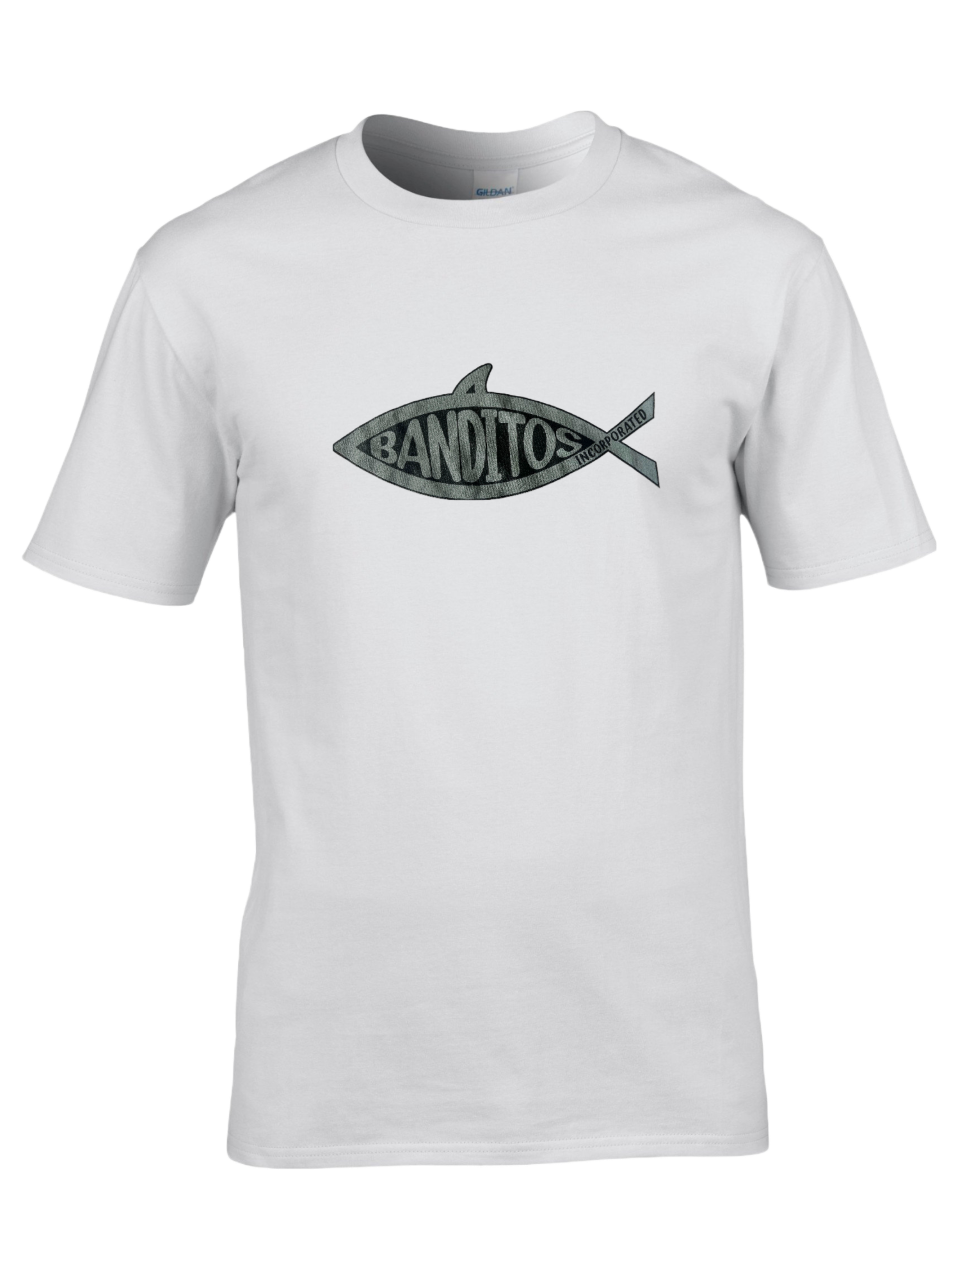 BANDITOS FISH T-SHIRT